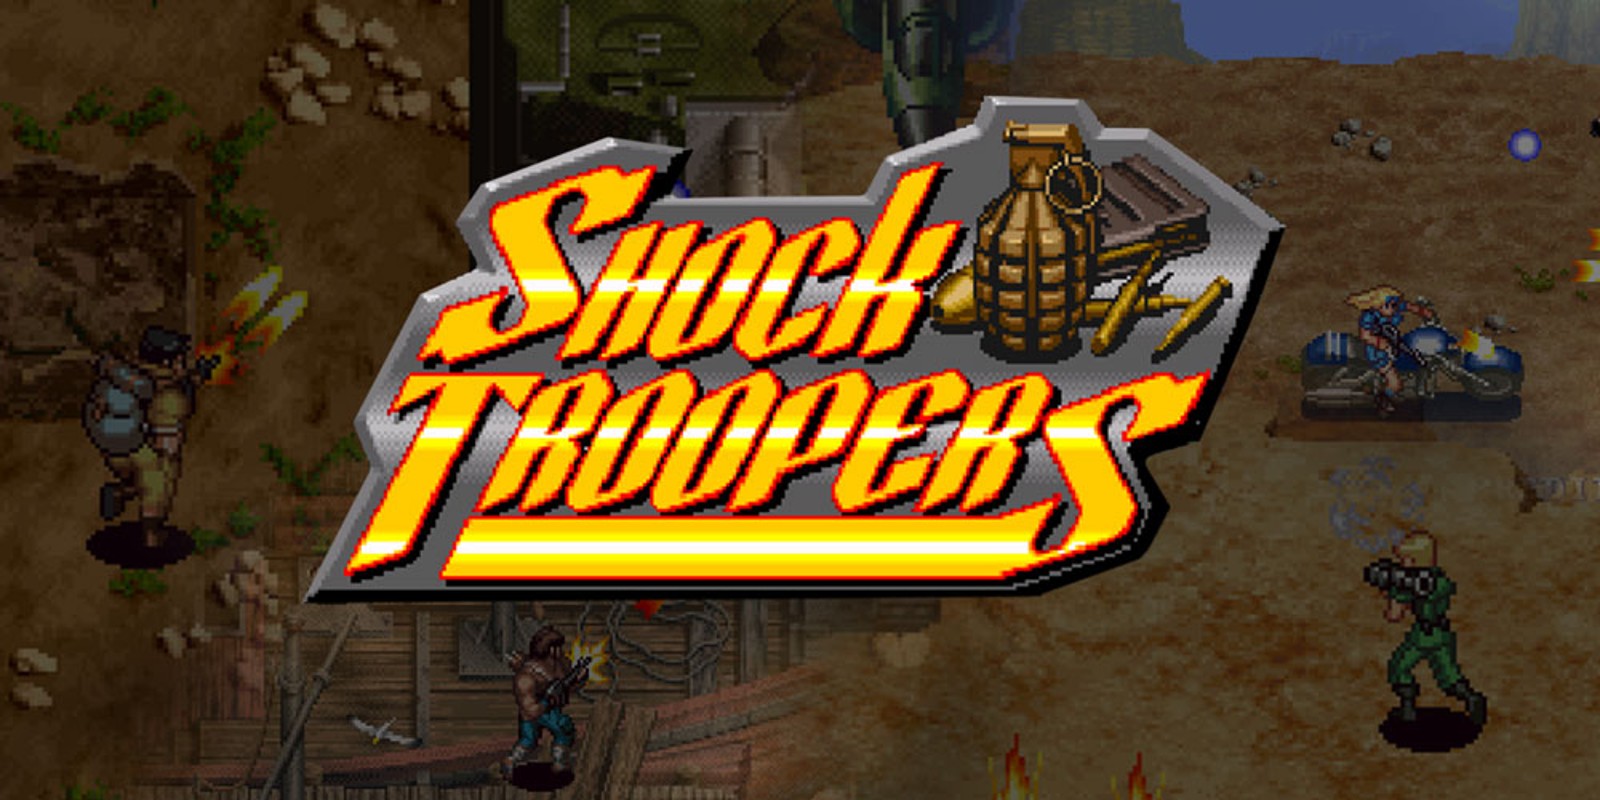 SHOCK TROOPERS